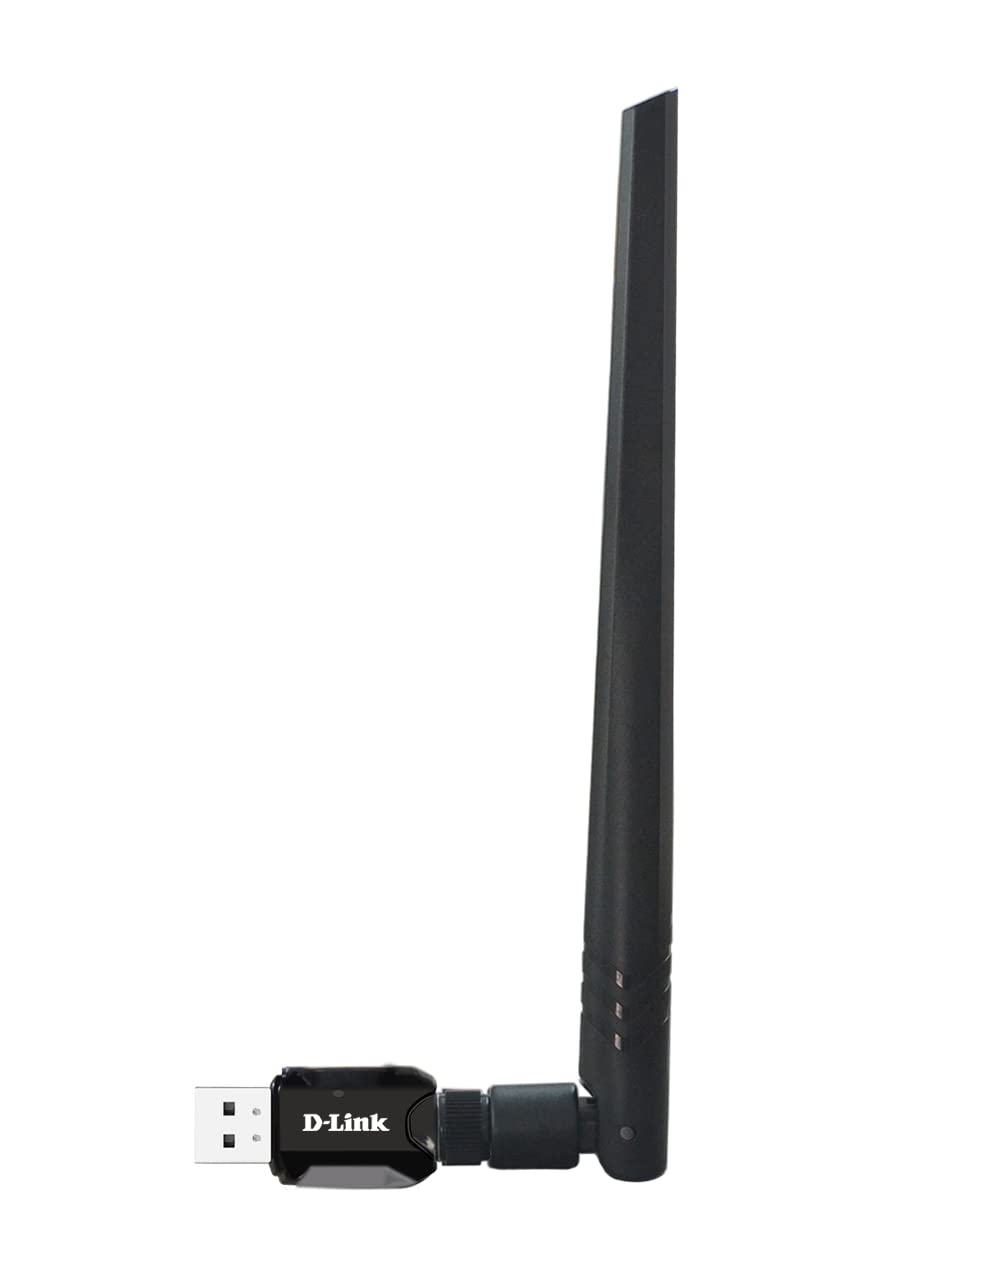 N300 HIGH-GAIN WI-FI USB